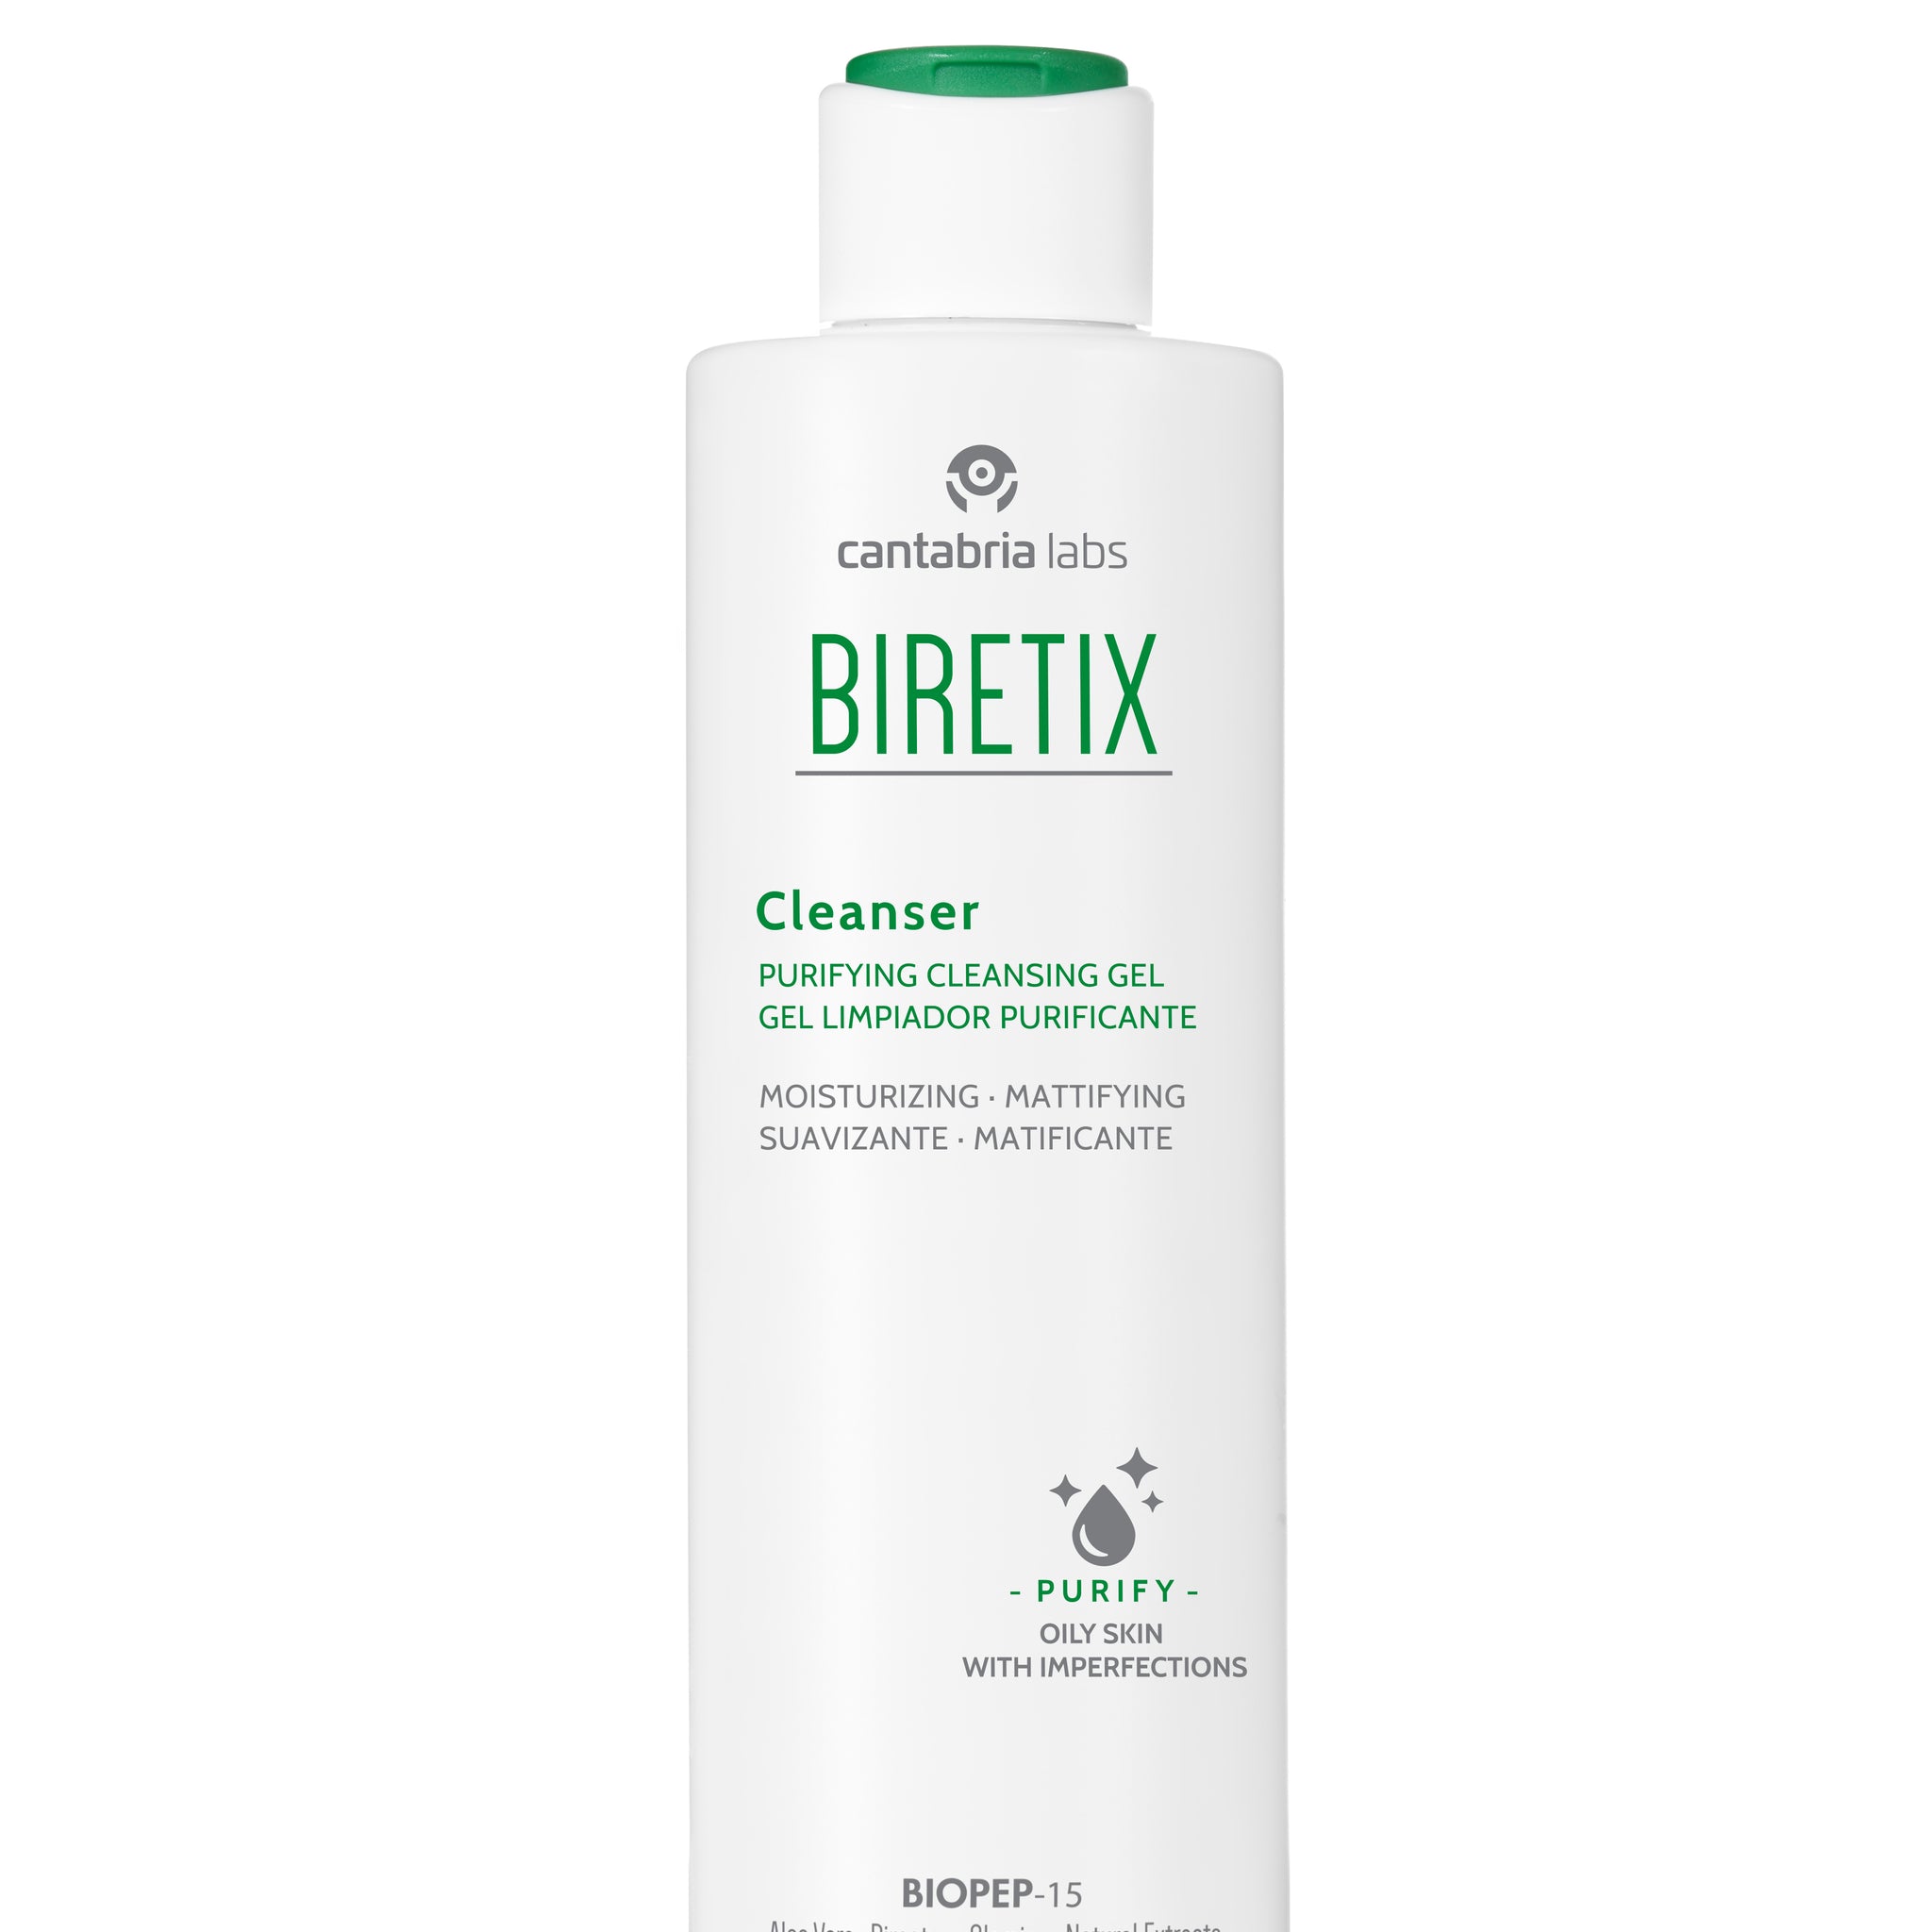 BIRETIX - Cleanser